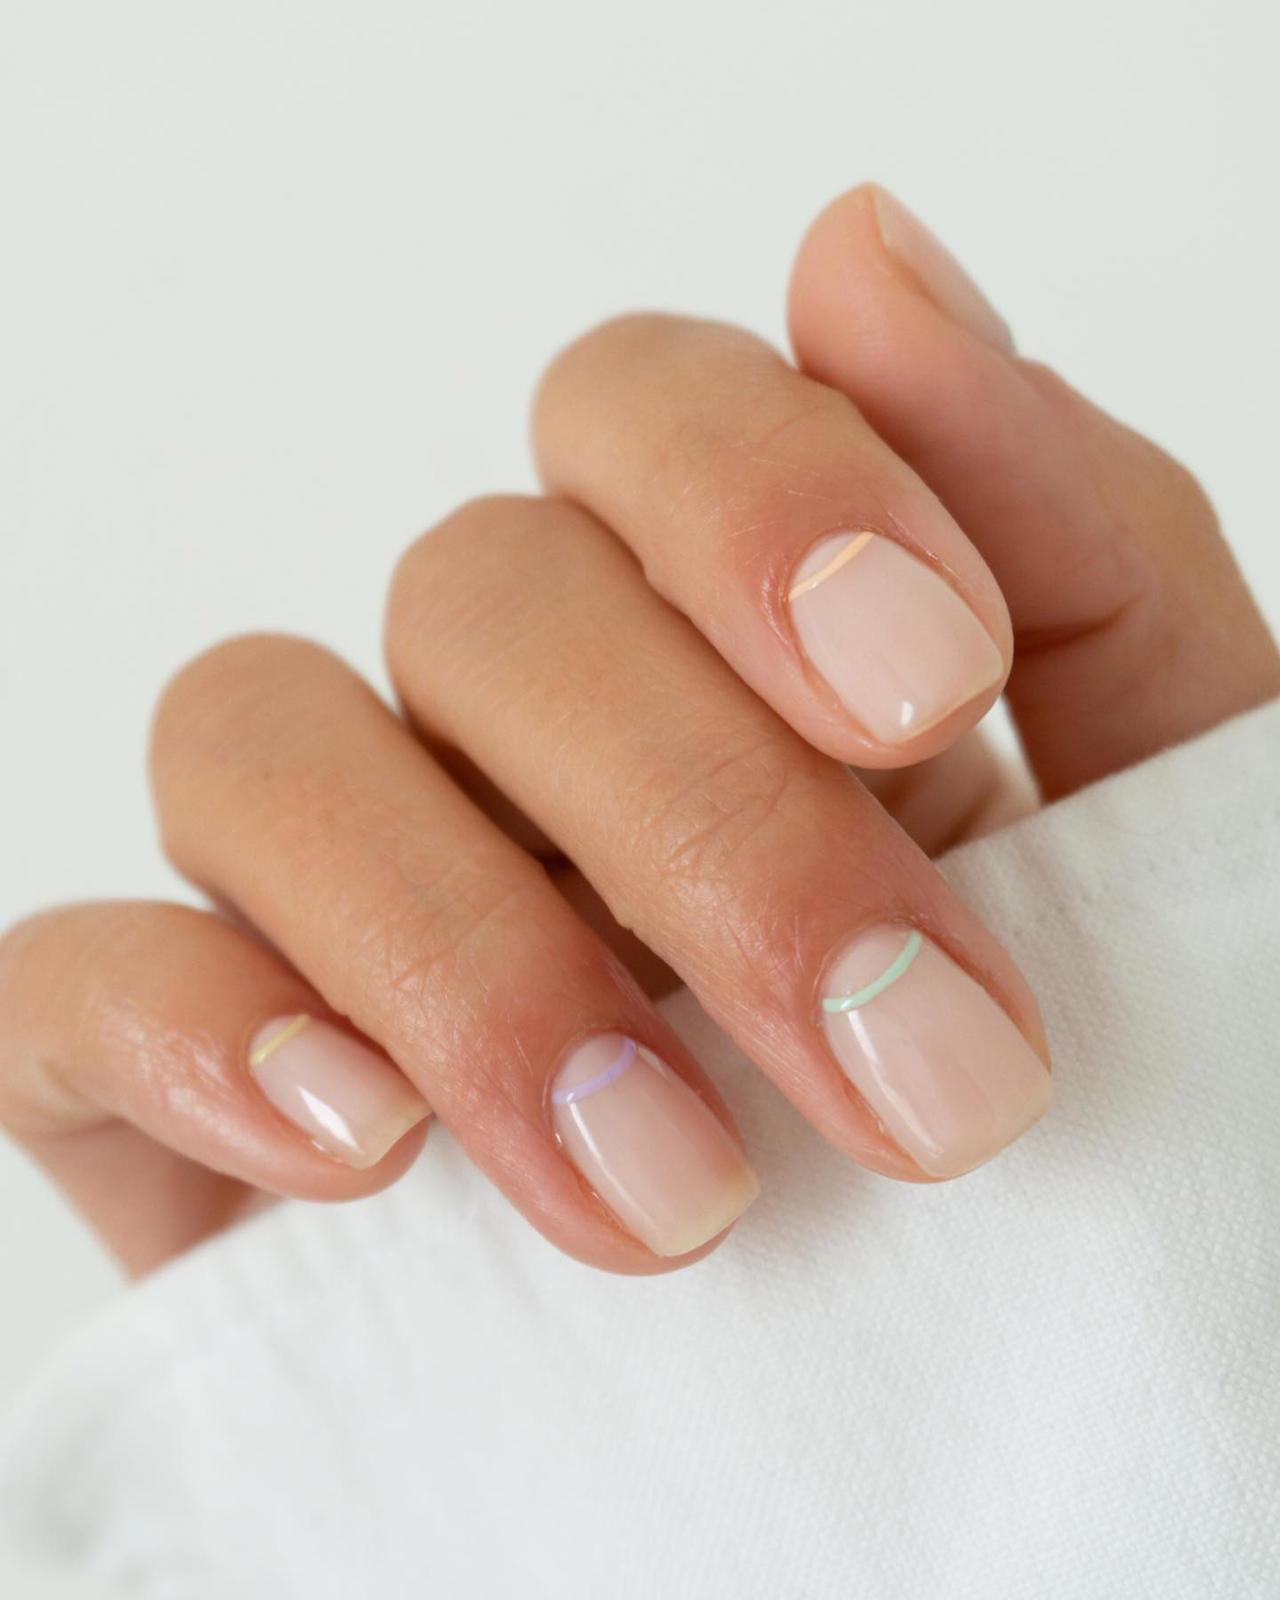 10 diseños de uñas minimalistas que adoran las pijas y son tendencia en el 'nail art'